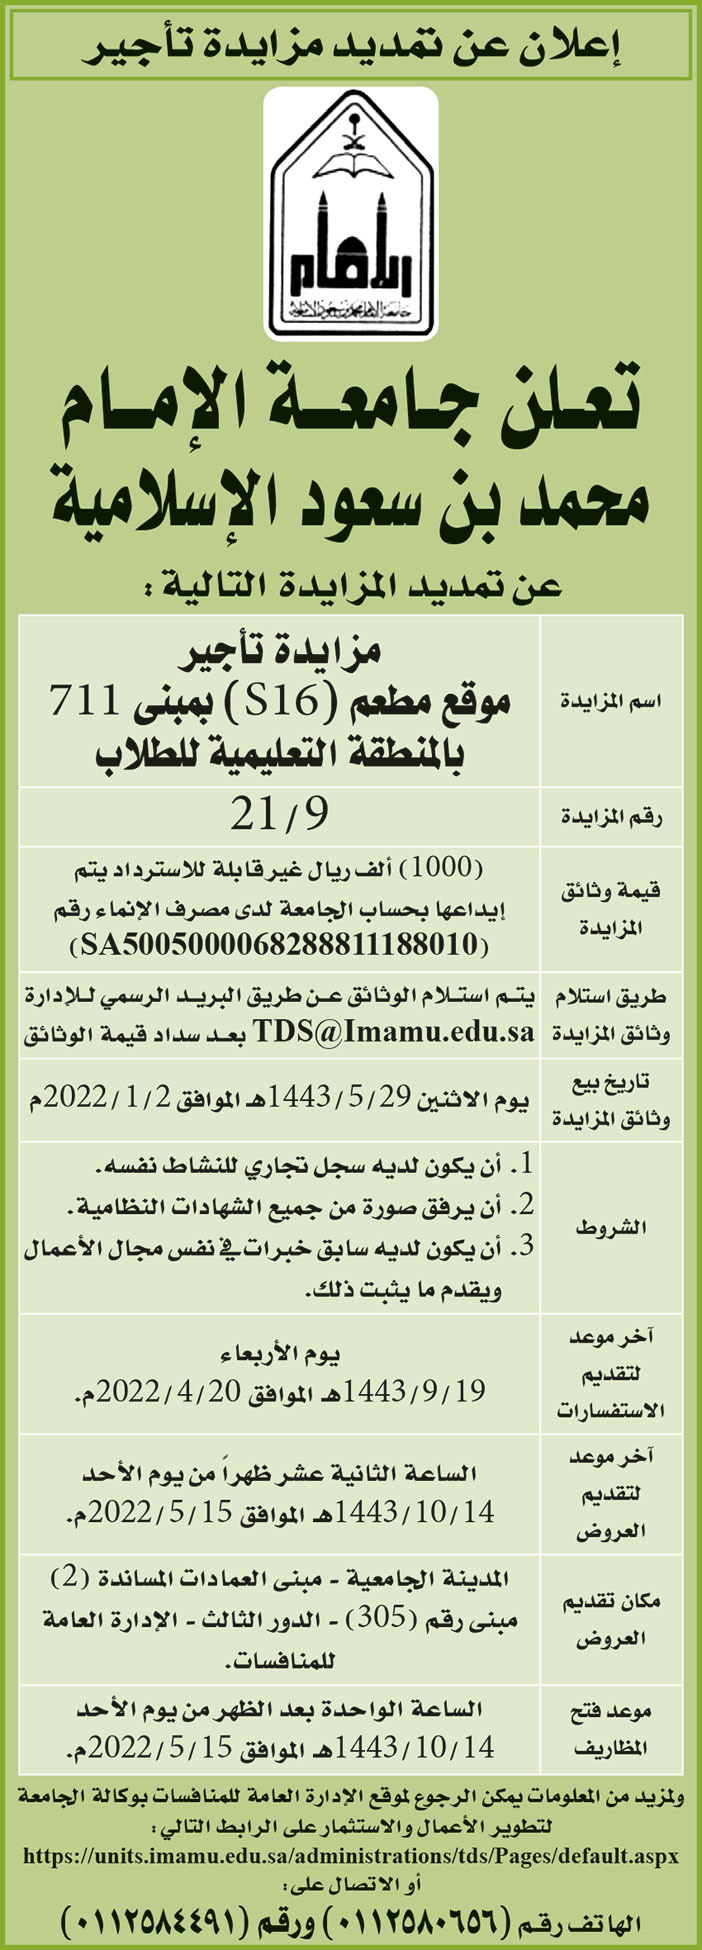 جامعة الإمام محمد بن سعود الإسلامية تمدد المزايدة على تأجير موقع مطعم (S16) بمبنى 711 بالمنطقة التعليمية للطلاب 